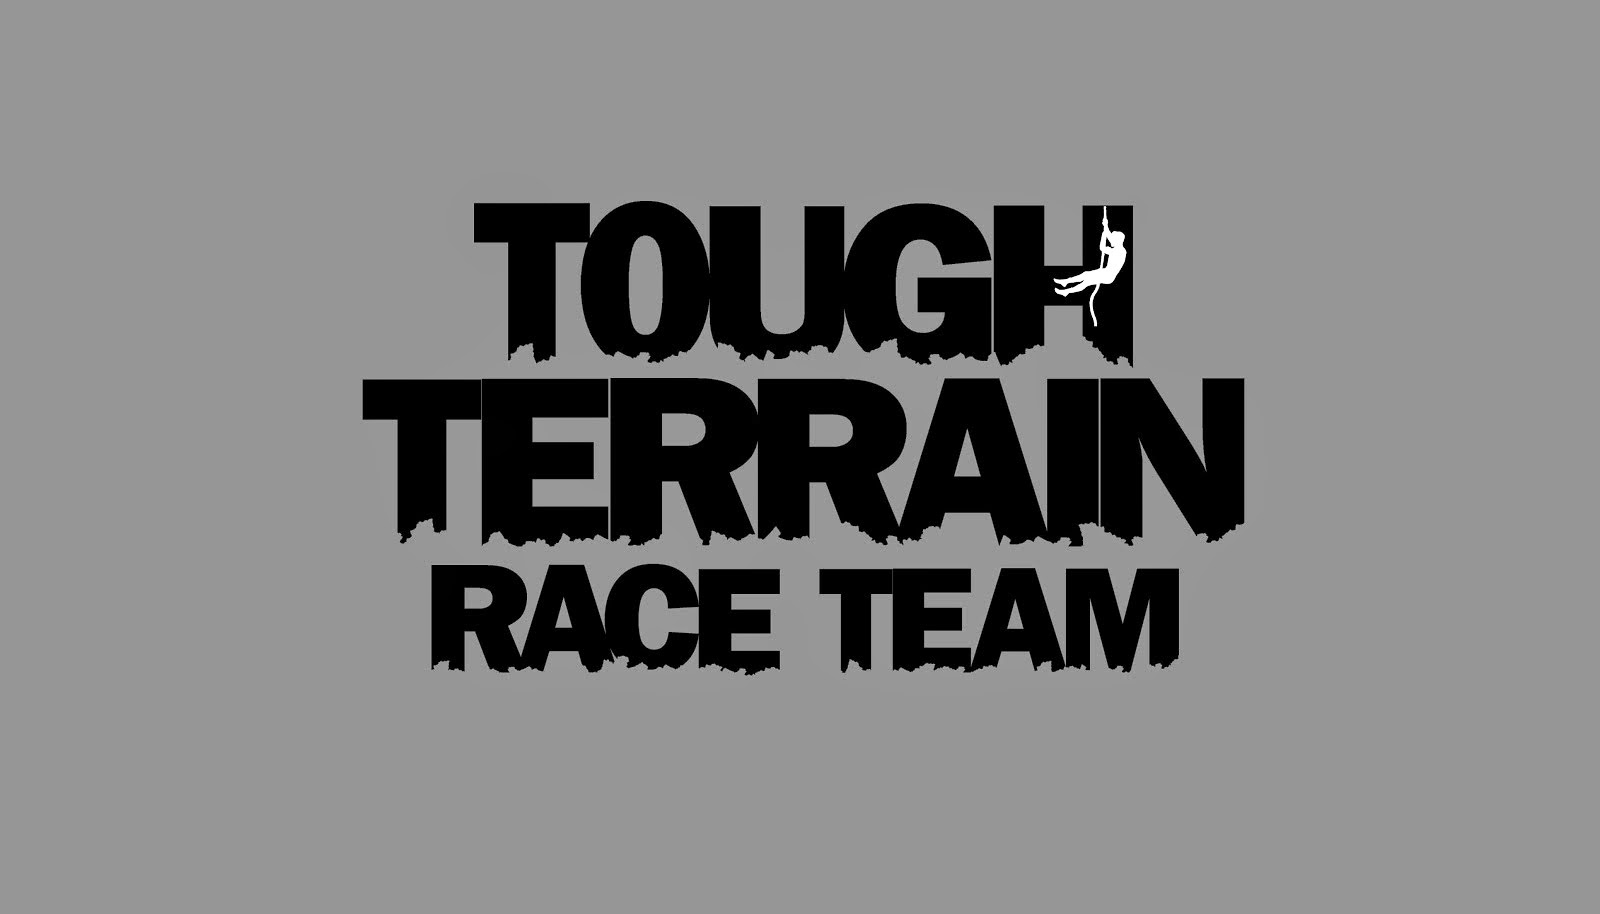 TOUGH TERRAIN RACE TEAM